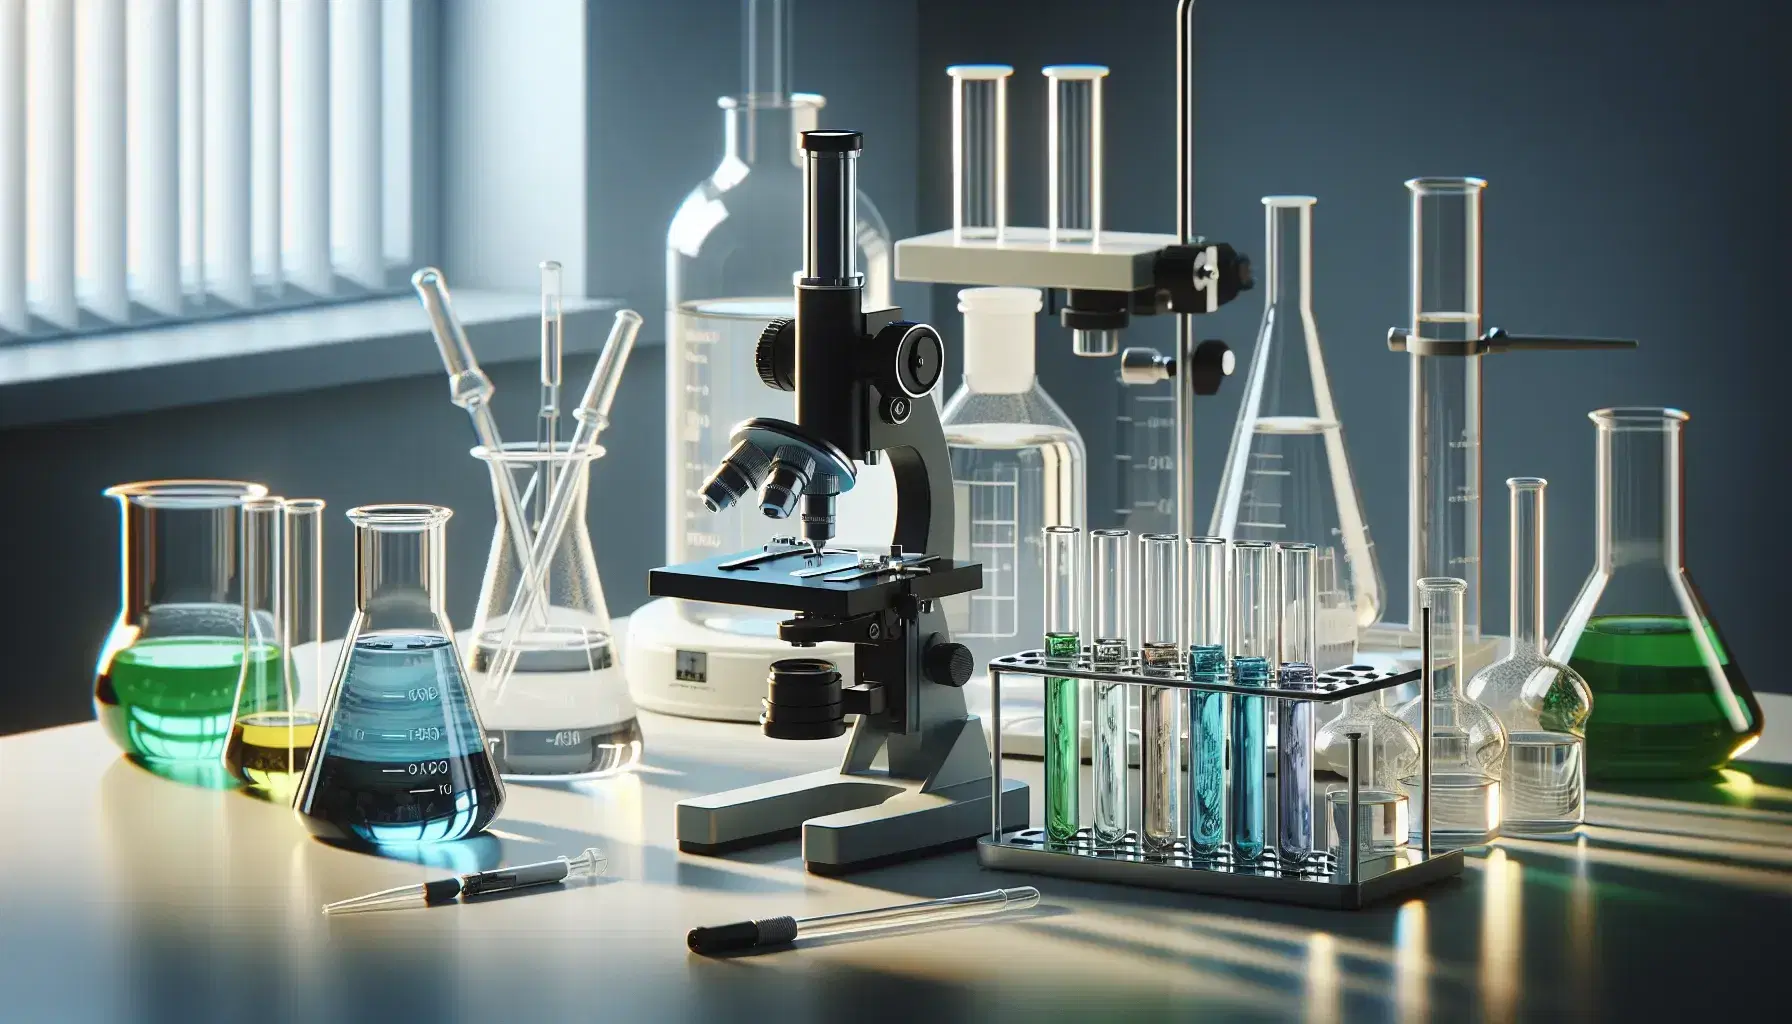 Laboratorio científico con microscopio, tubos de ensayo con líquidos de colores y frascos de vidrio sobre mesa iluminada.